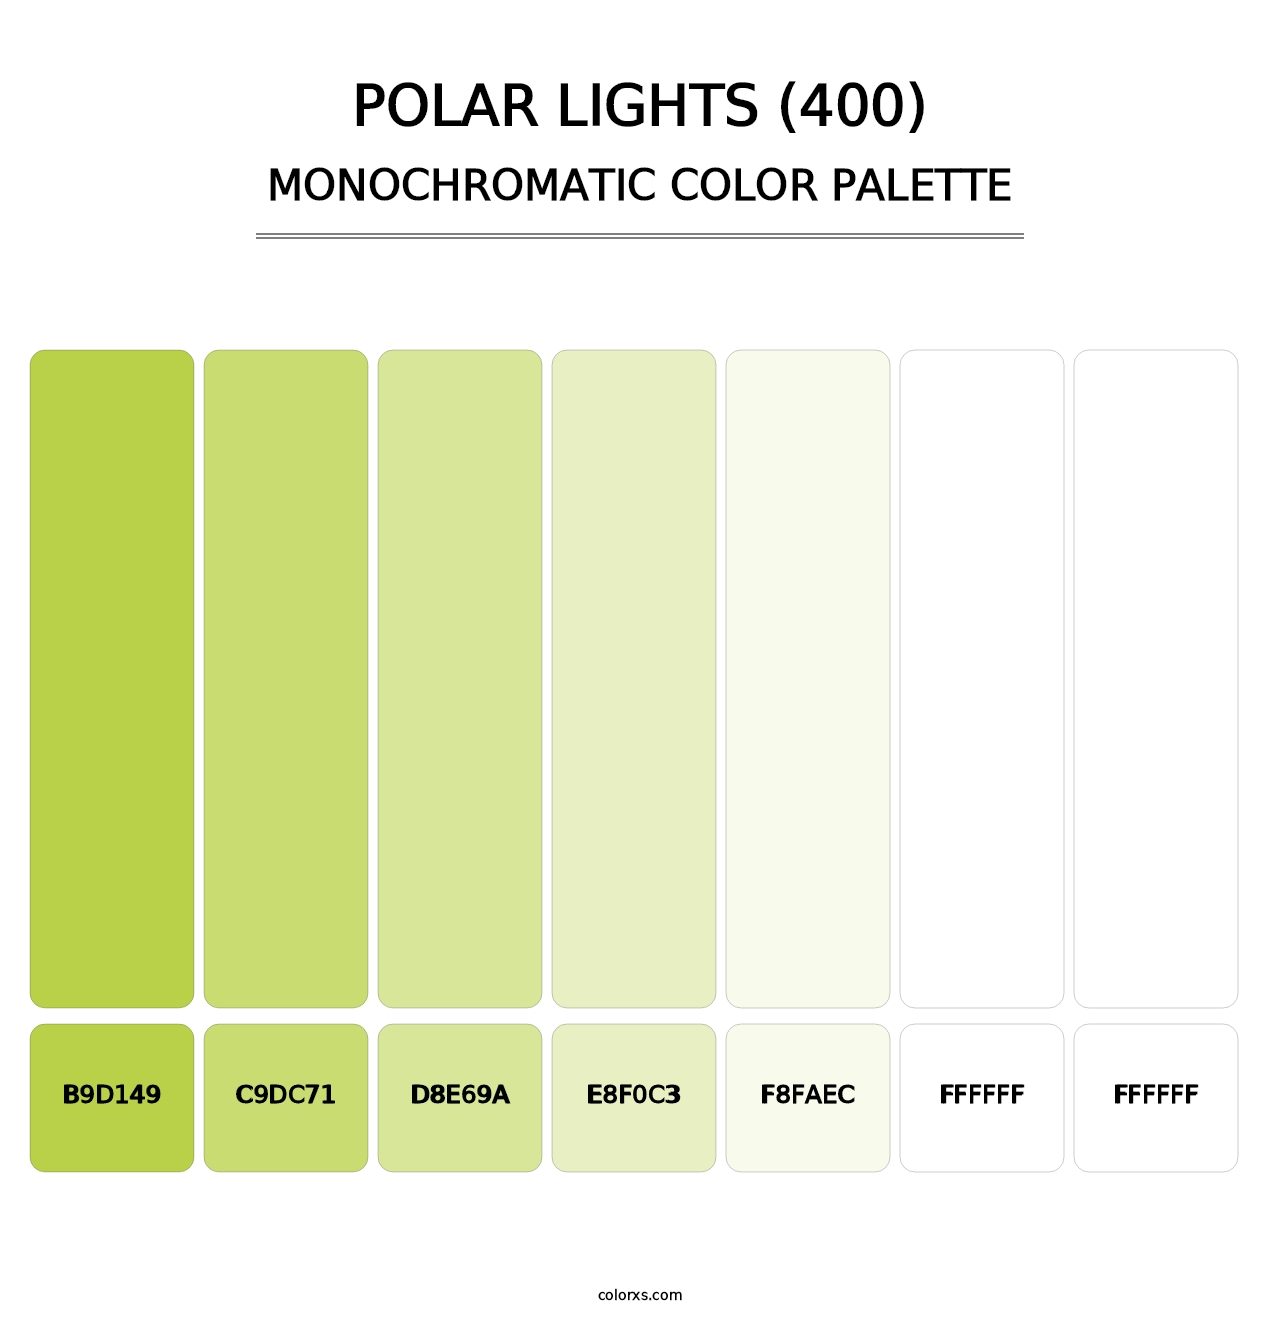 Polar Lights (400) - Monochromatic Color Palette